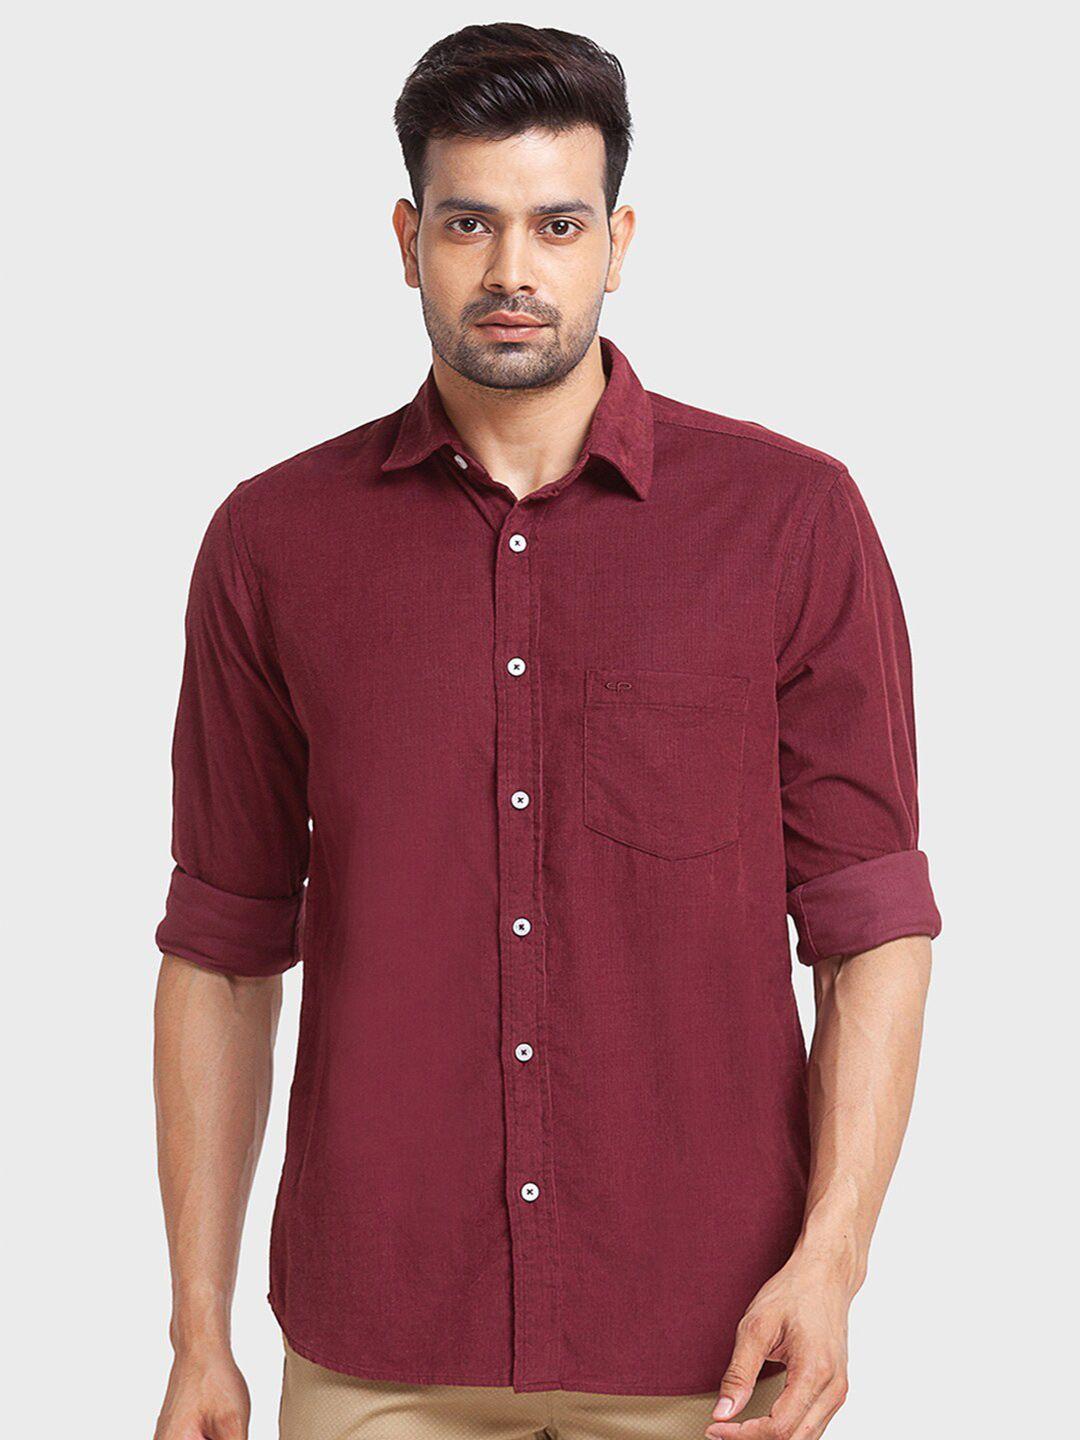 colorplus-men-tailored-fit-cotton-casual-shirt